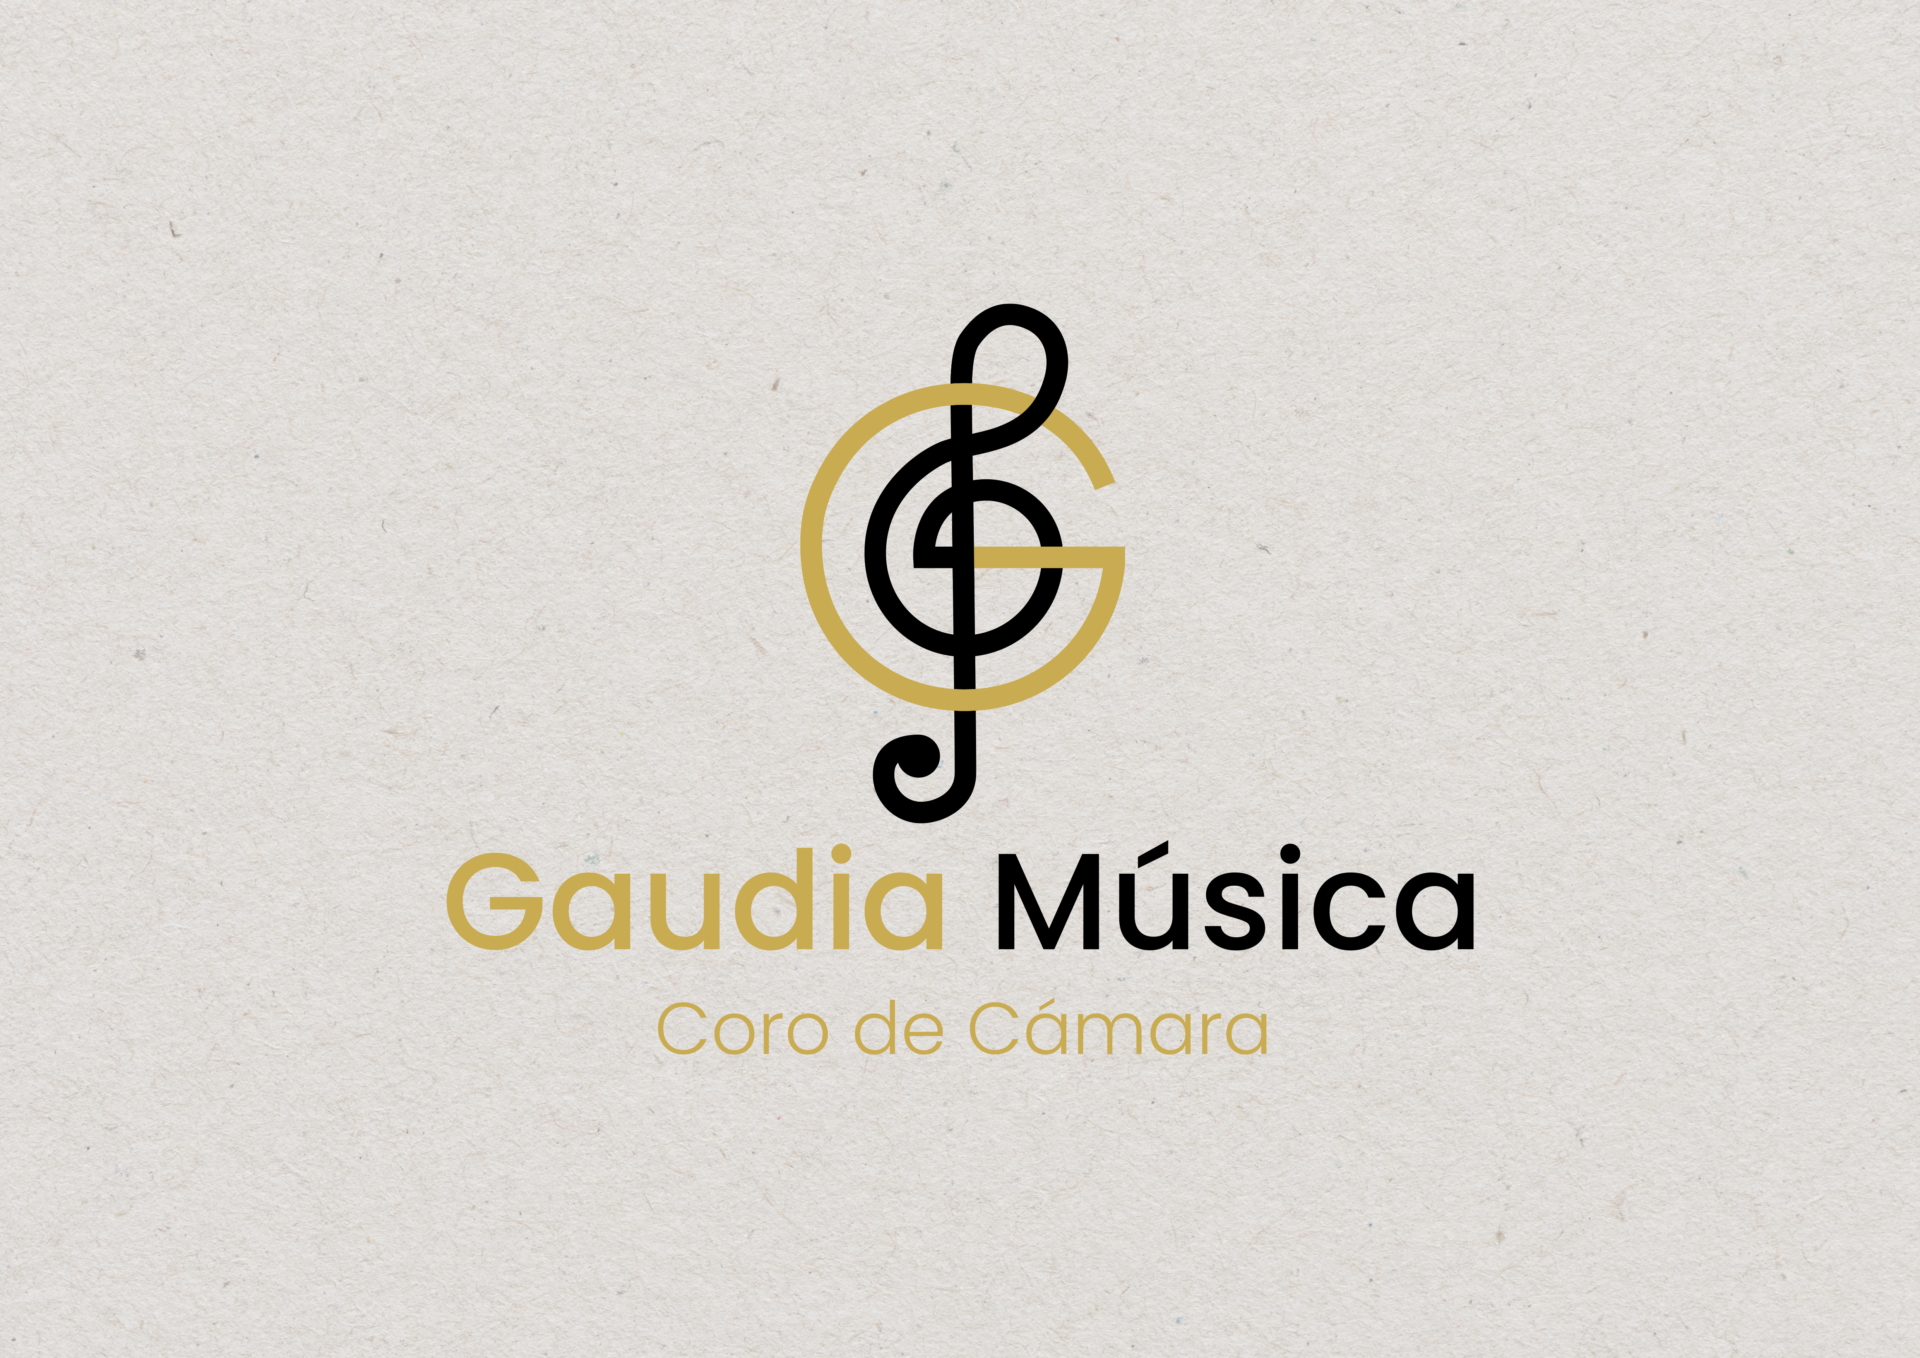 Gaudia-musica-05